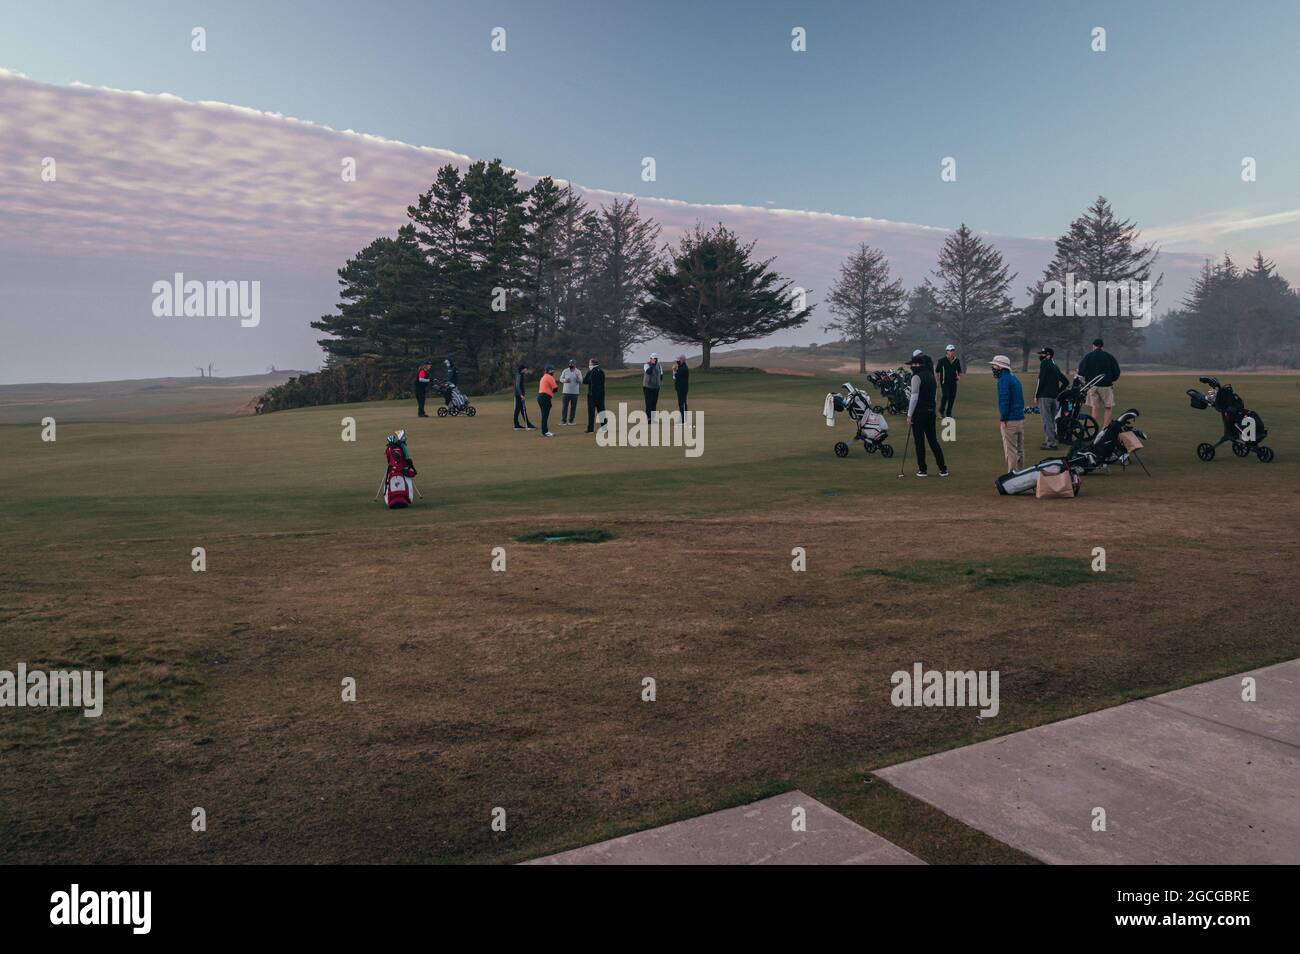 La gente gioca a golf sul campo Bandon Dunes Sheep Ranch, Oregon Foto Stock